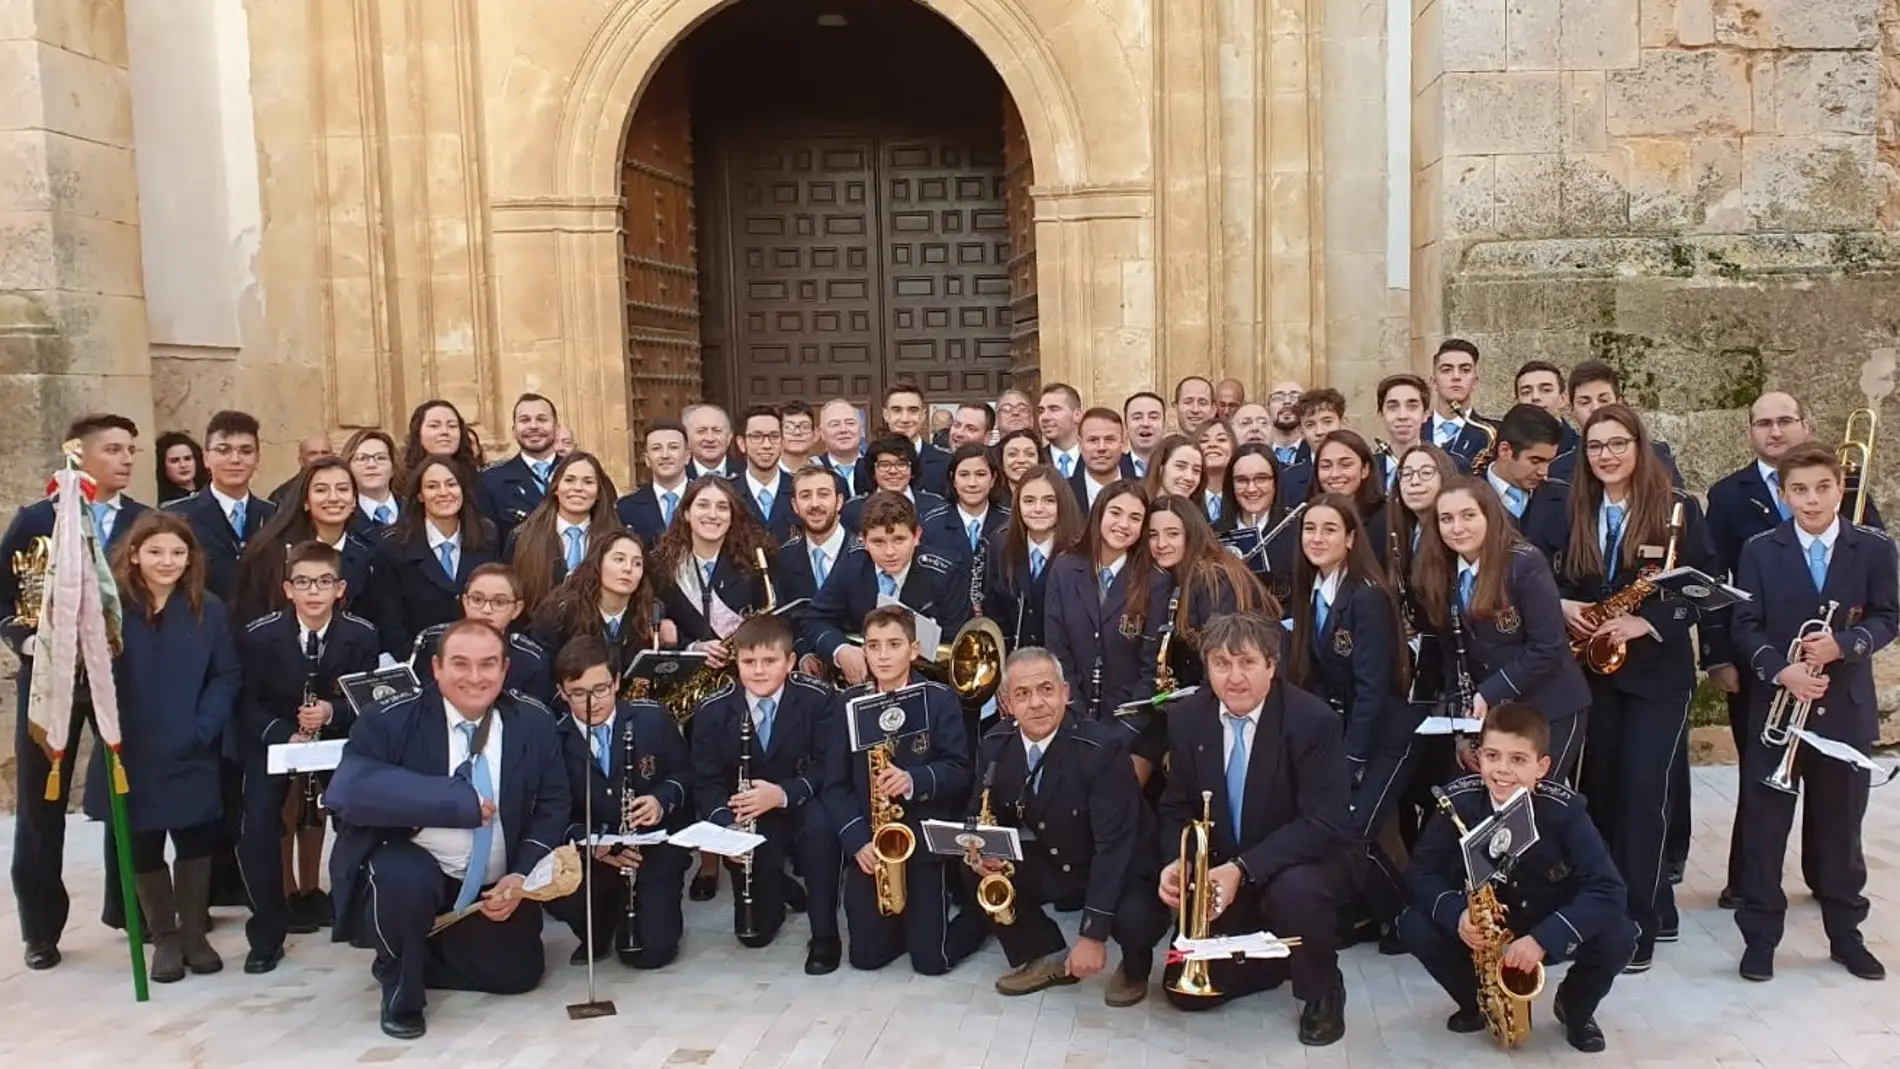 La Asociación Musical Santa Cecilia de El Toboso celebrará la festividad de la patrona de los músicos con diversas actividades